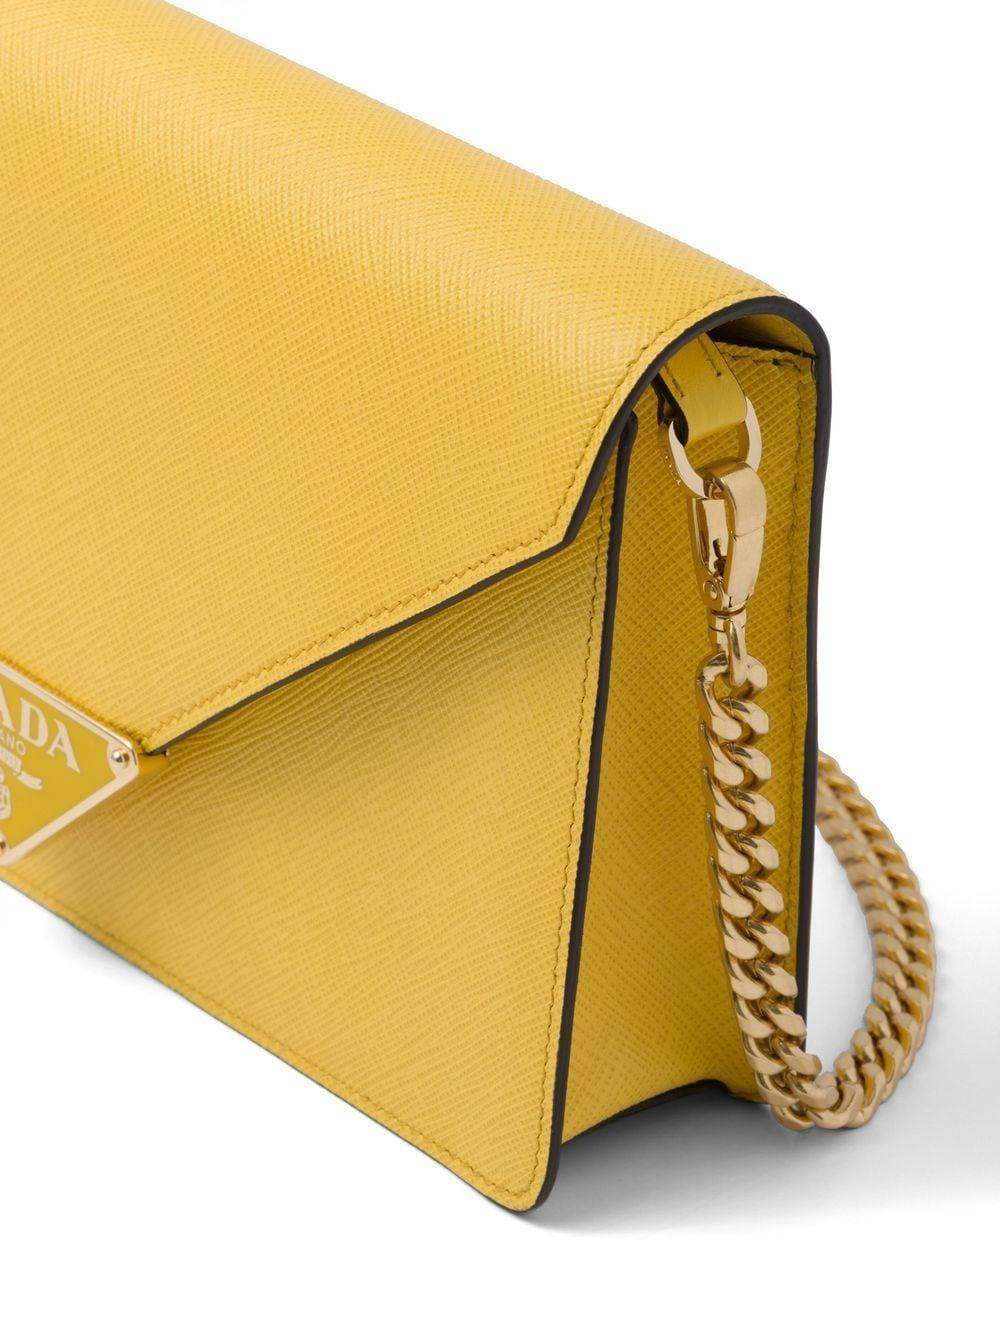 Prada Envelope Shoulder Bag in Yellow